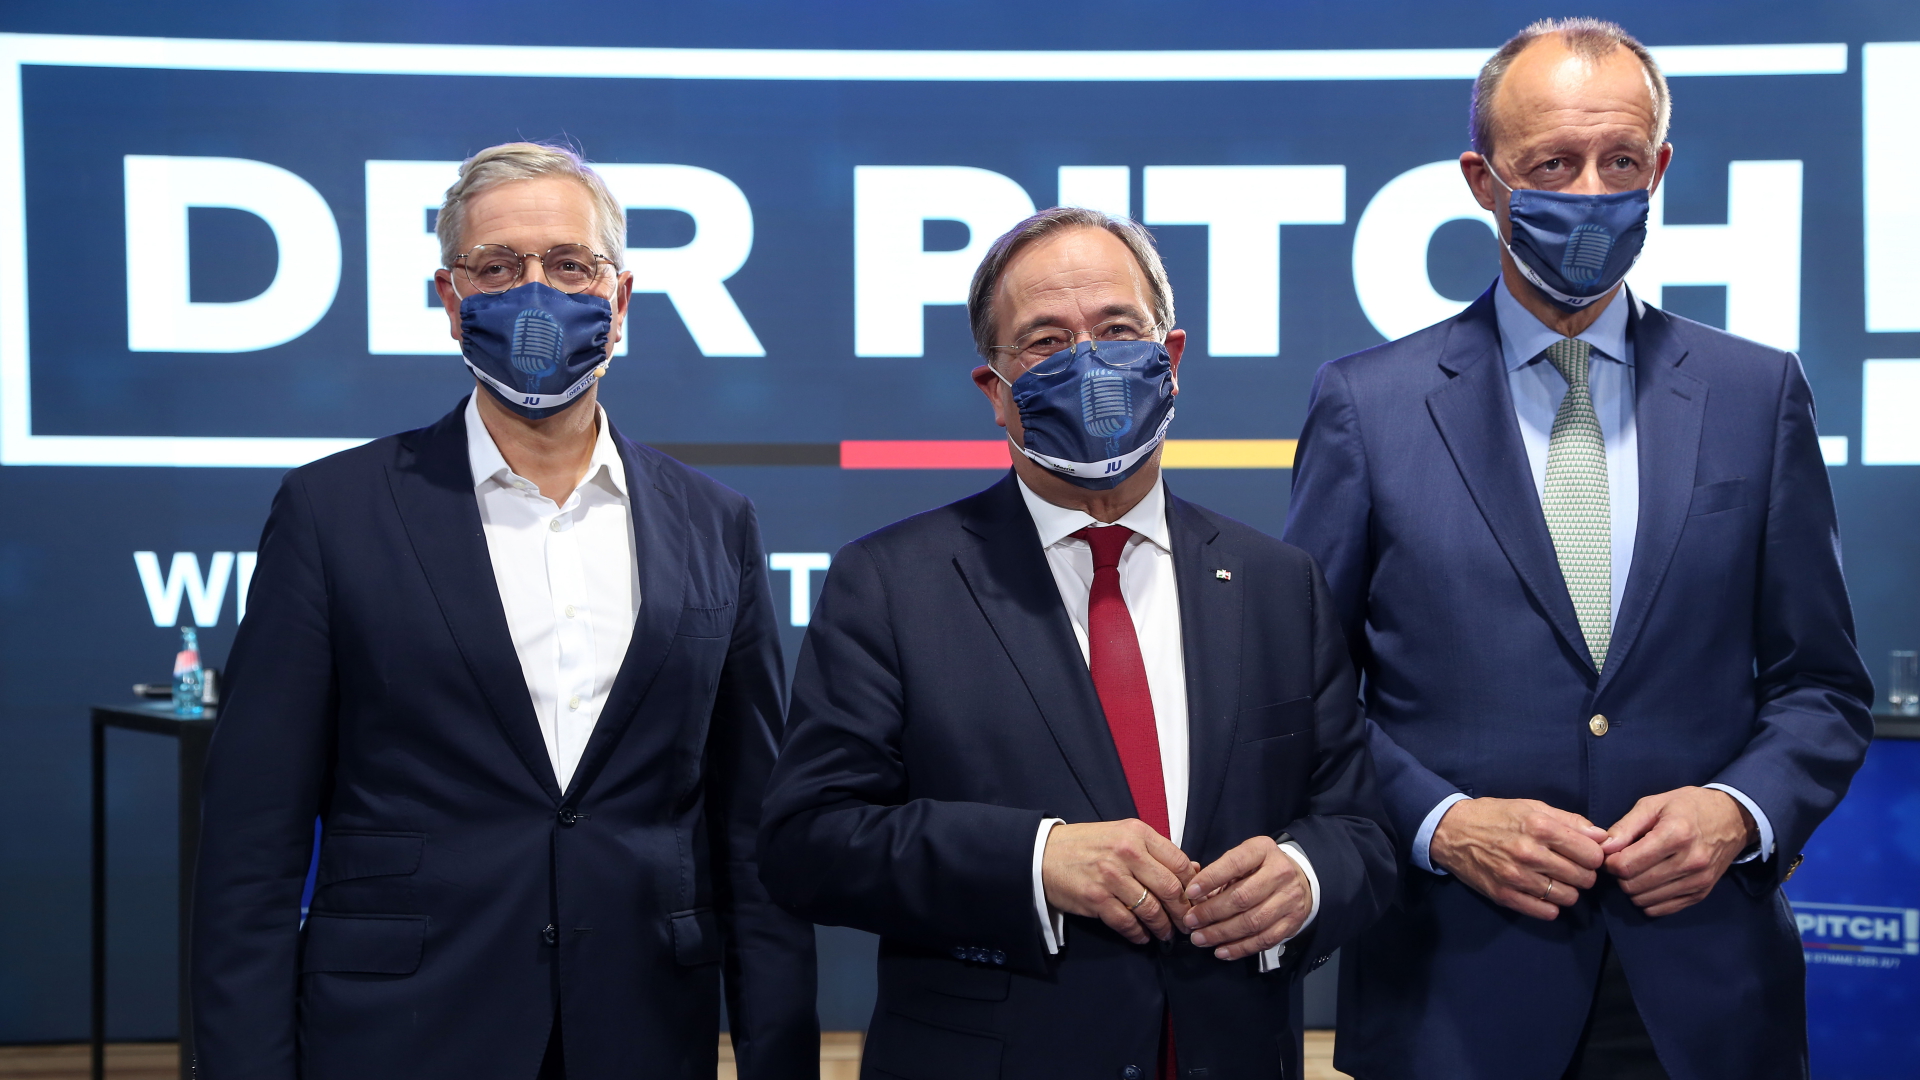 Norbert Röttgen, Armin Laschet und Friedrich Merz | ADAM BERRY/POOL/EPA-EFE/Shutters